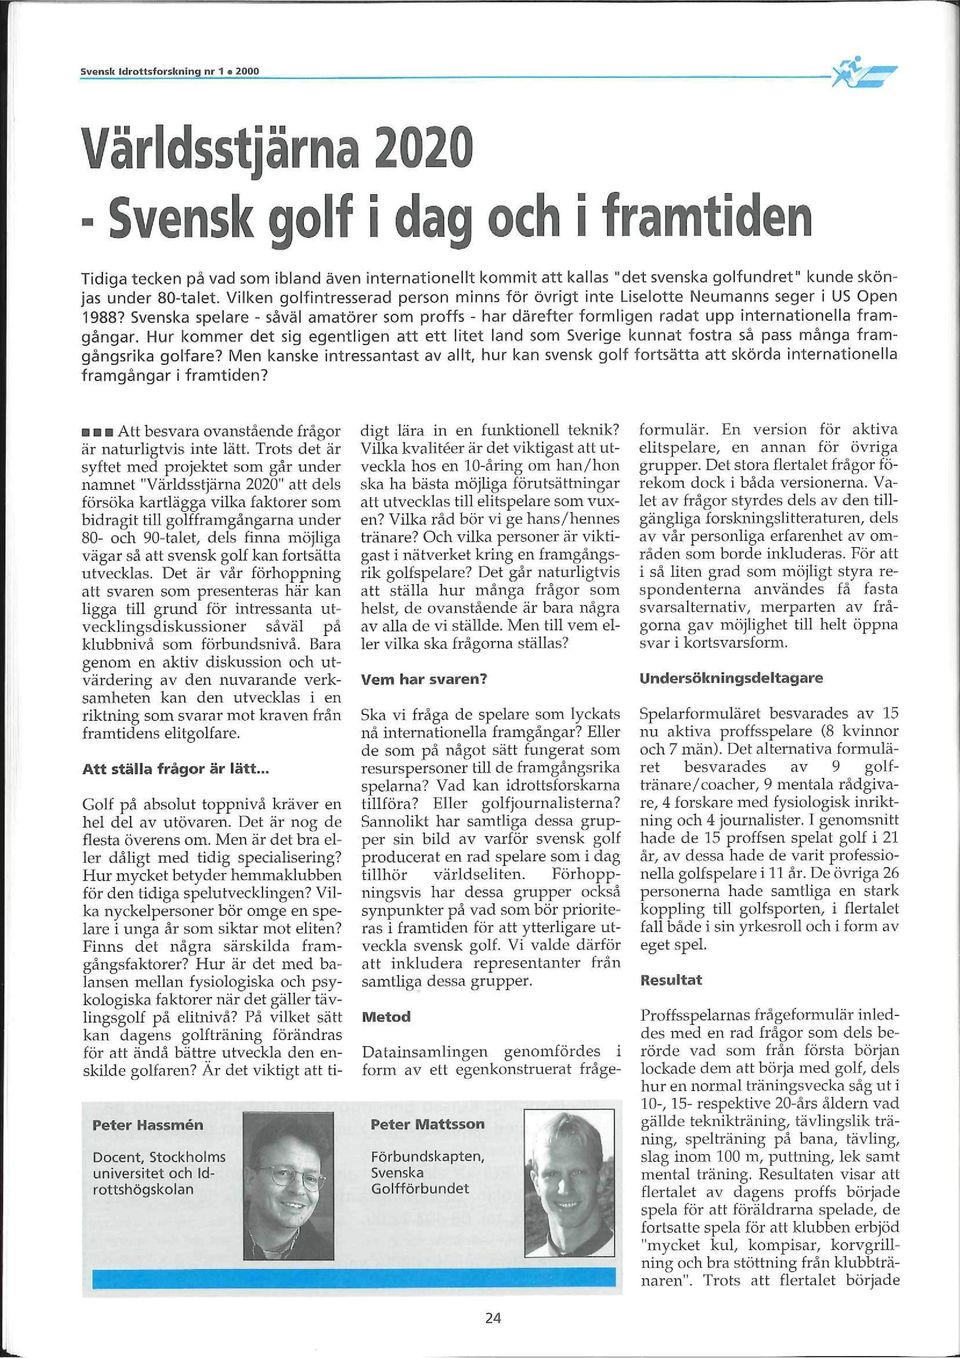 Hur kommer det sig egentligen att ett litet land som Sverige kunnat fostra så pass många framgångsrika golfare?